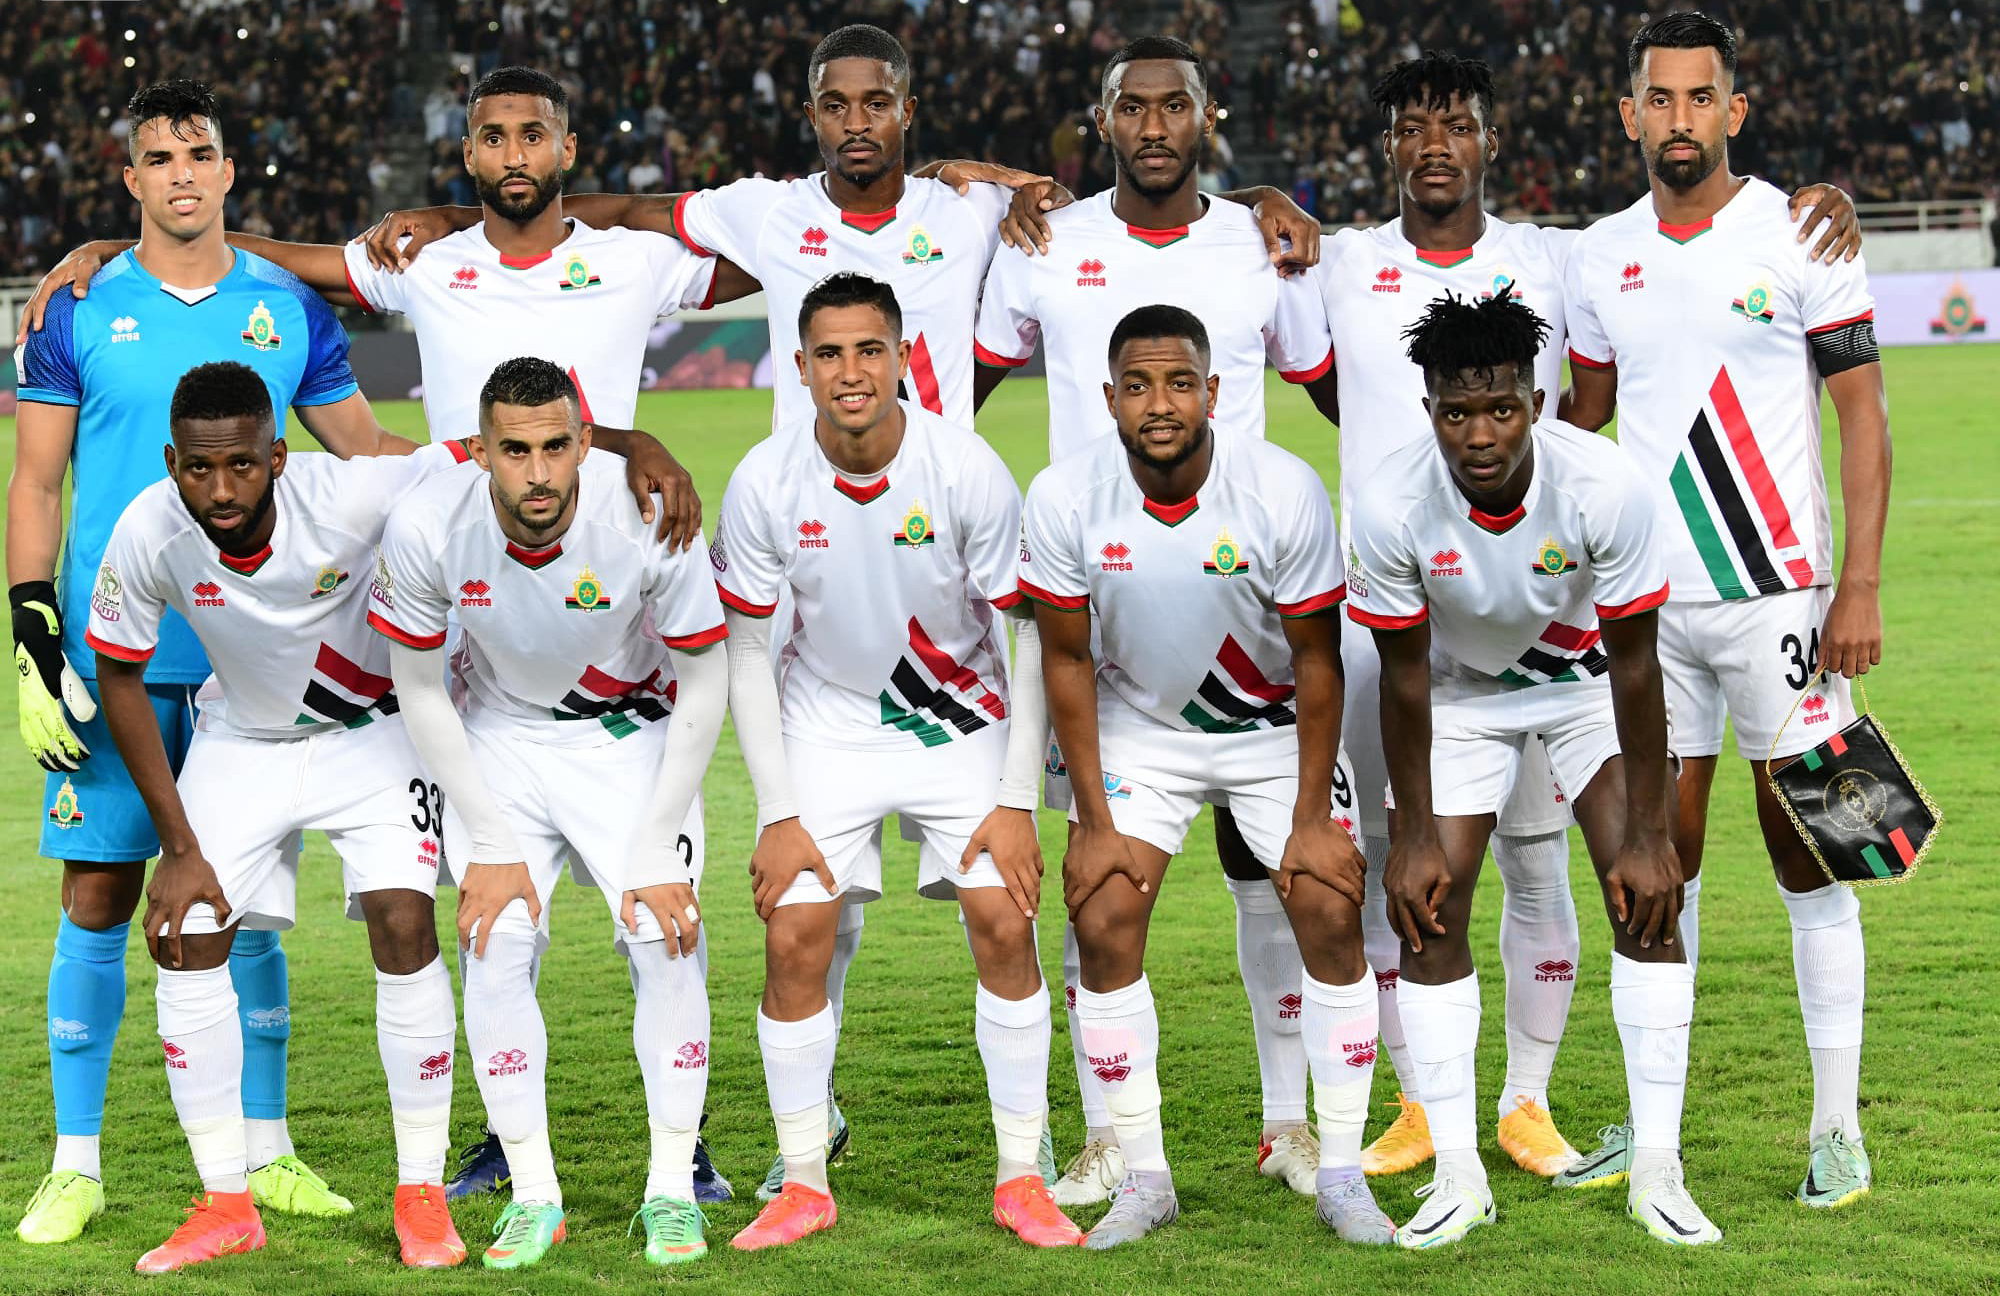 الجيش يرصد منحة مهمة للاعبين للإطاحة بإتحاد الجزائر